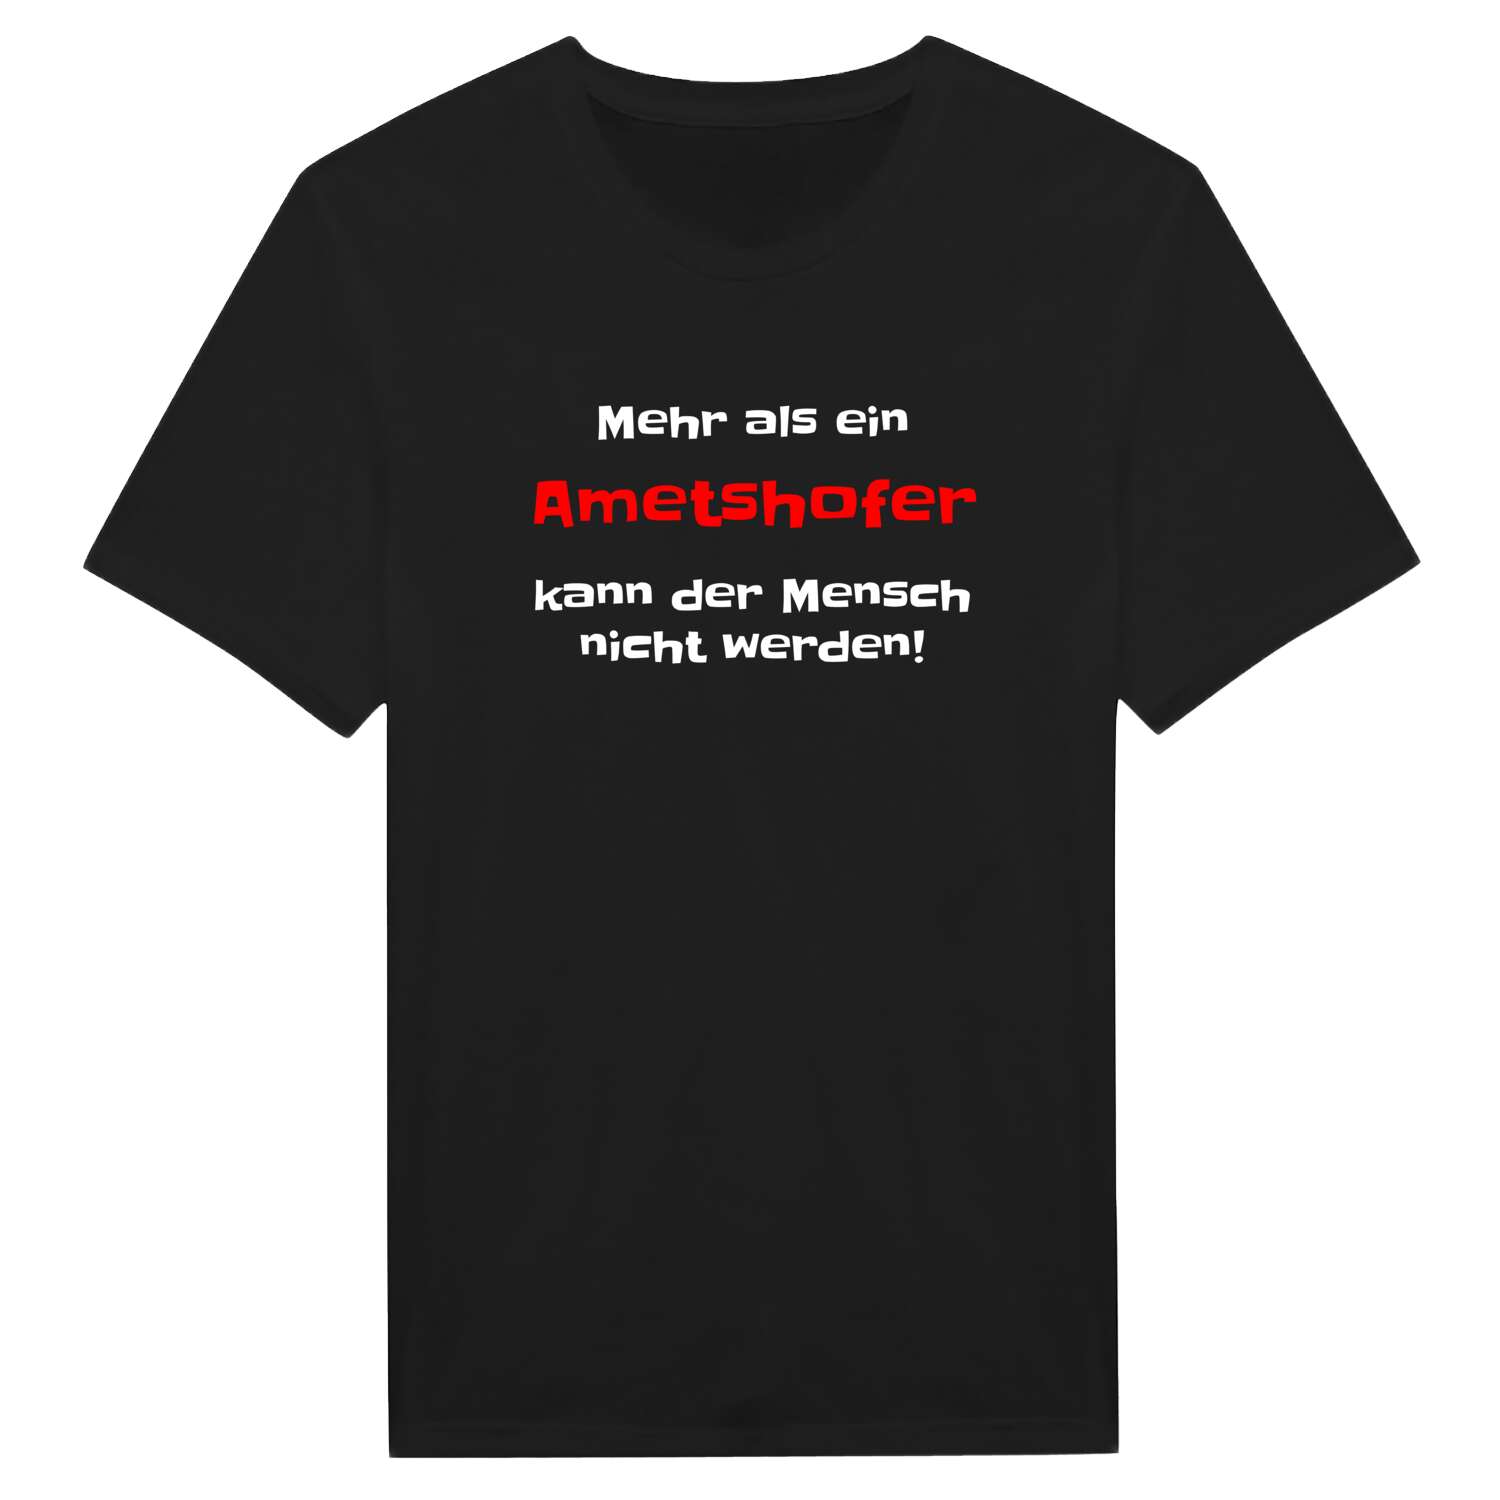 Ametshof T-Shirt »Mehr als ein«